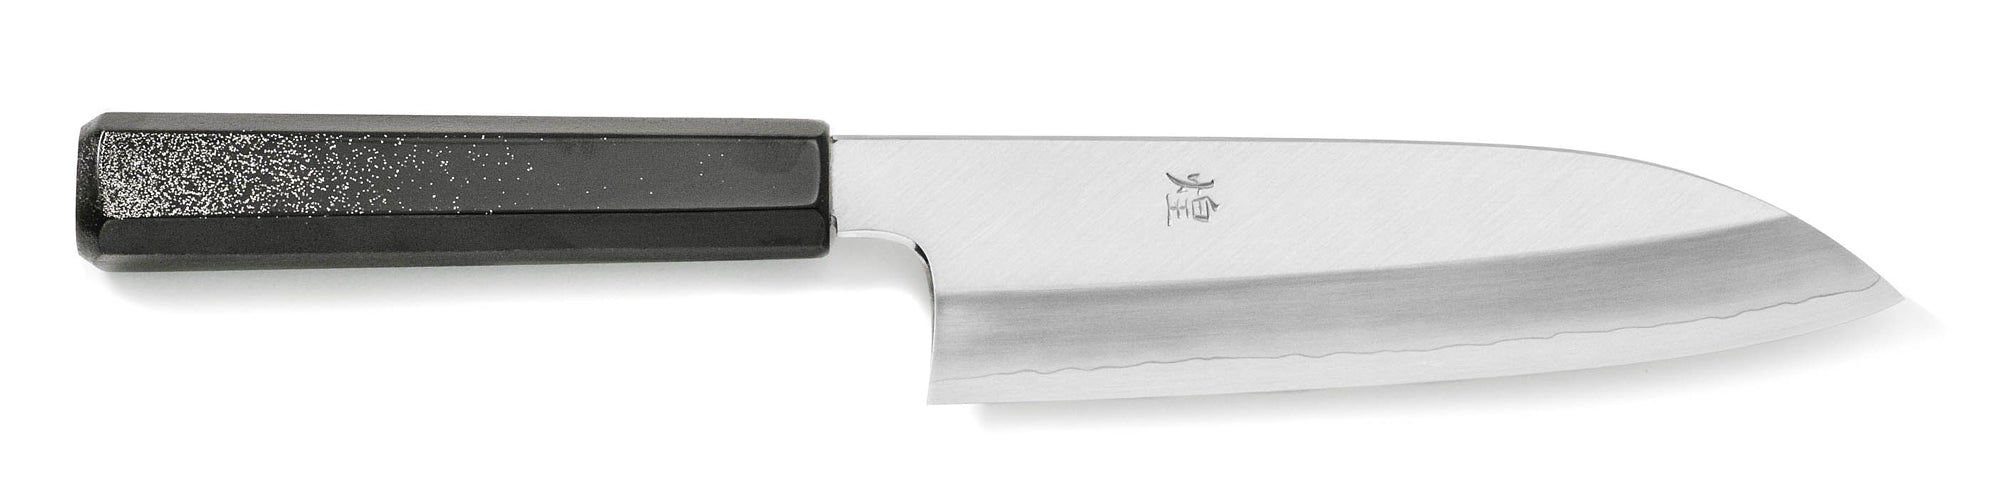 Kirameki VG-10 Suzuchirashi handle Wa Santoku Knife